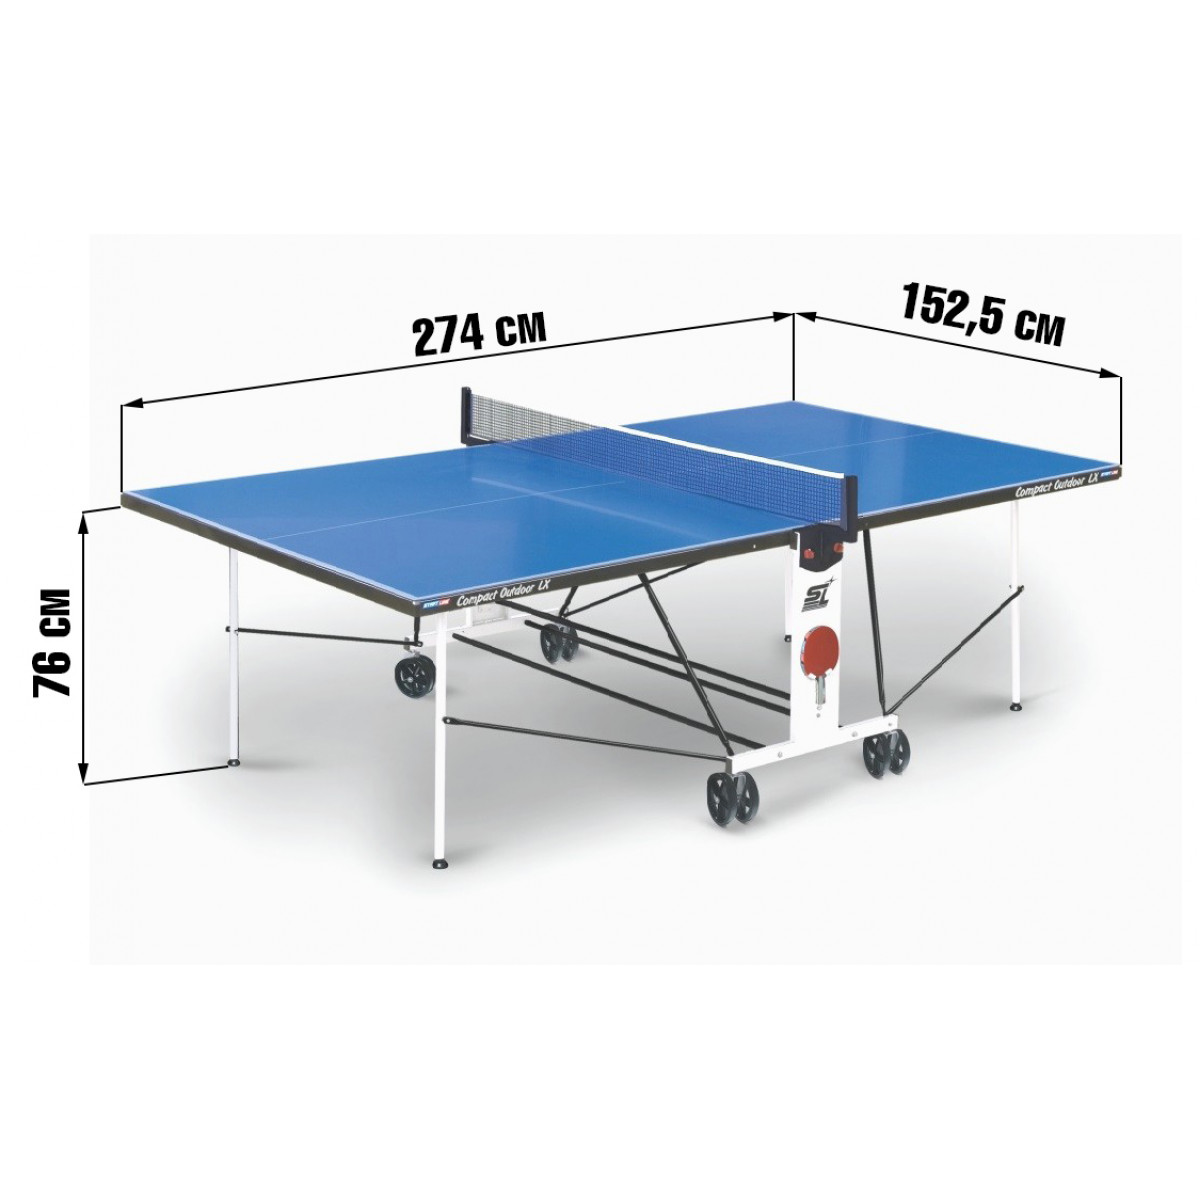 Складной настольный теннис. Теннисный стол Compact Outdoor LX. Стол для настольного тенниса r1002rs. Теннисный стол Borneo Prime. Габариты стола для настольного тенниса.